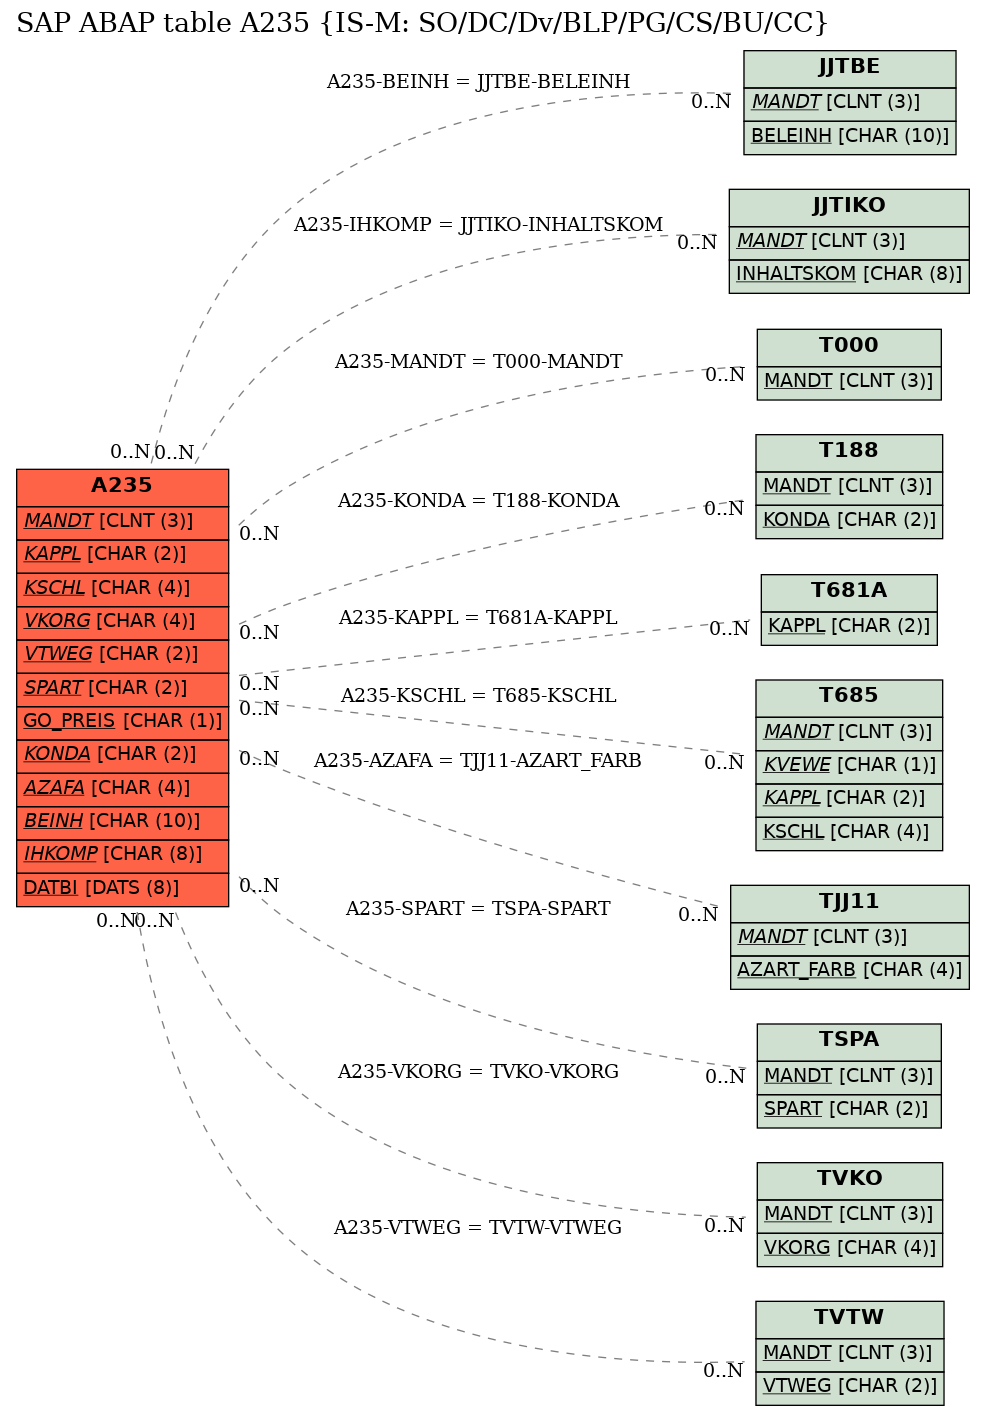 E-R Diagram for table A235 (IS-M: SO/DC/Dv/BLP/PG/CS/BU/CC)